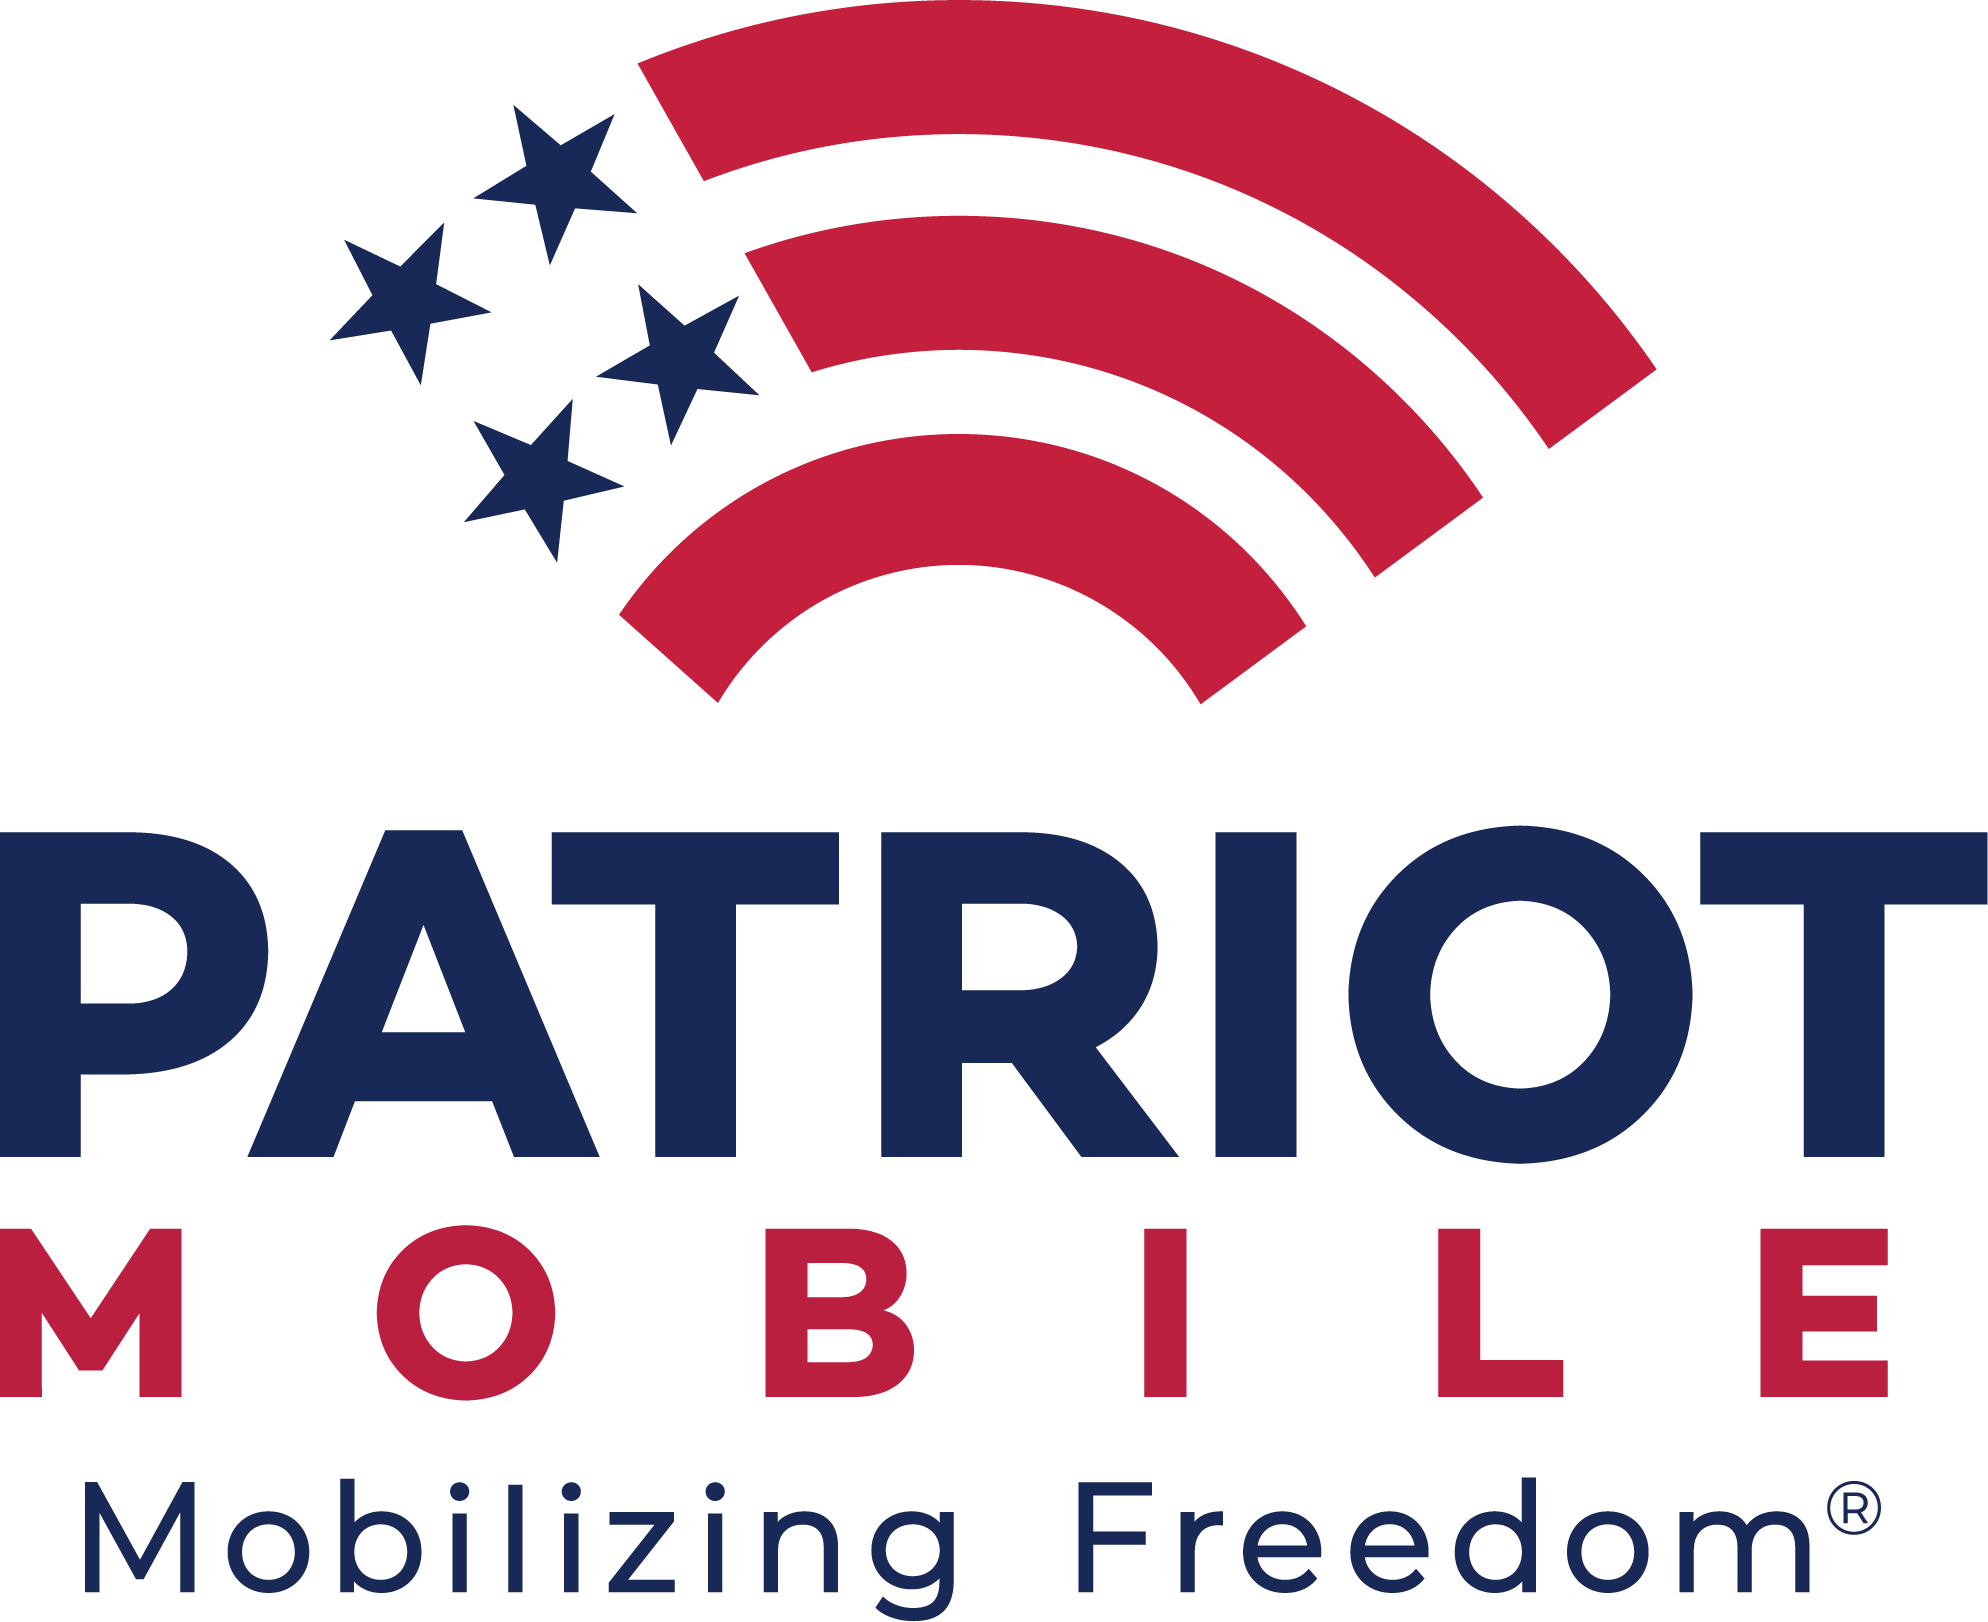 www.patriotmobile.com